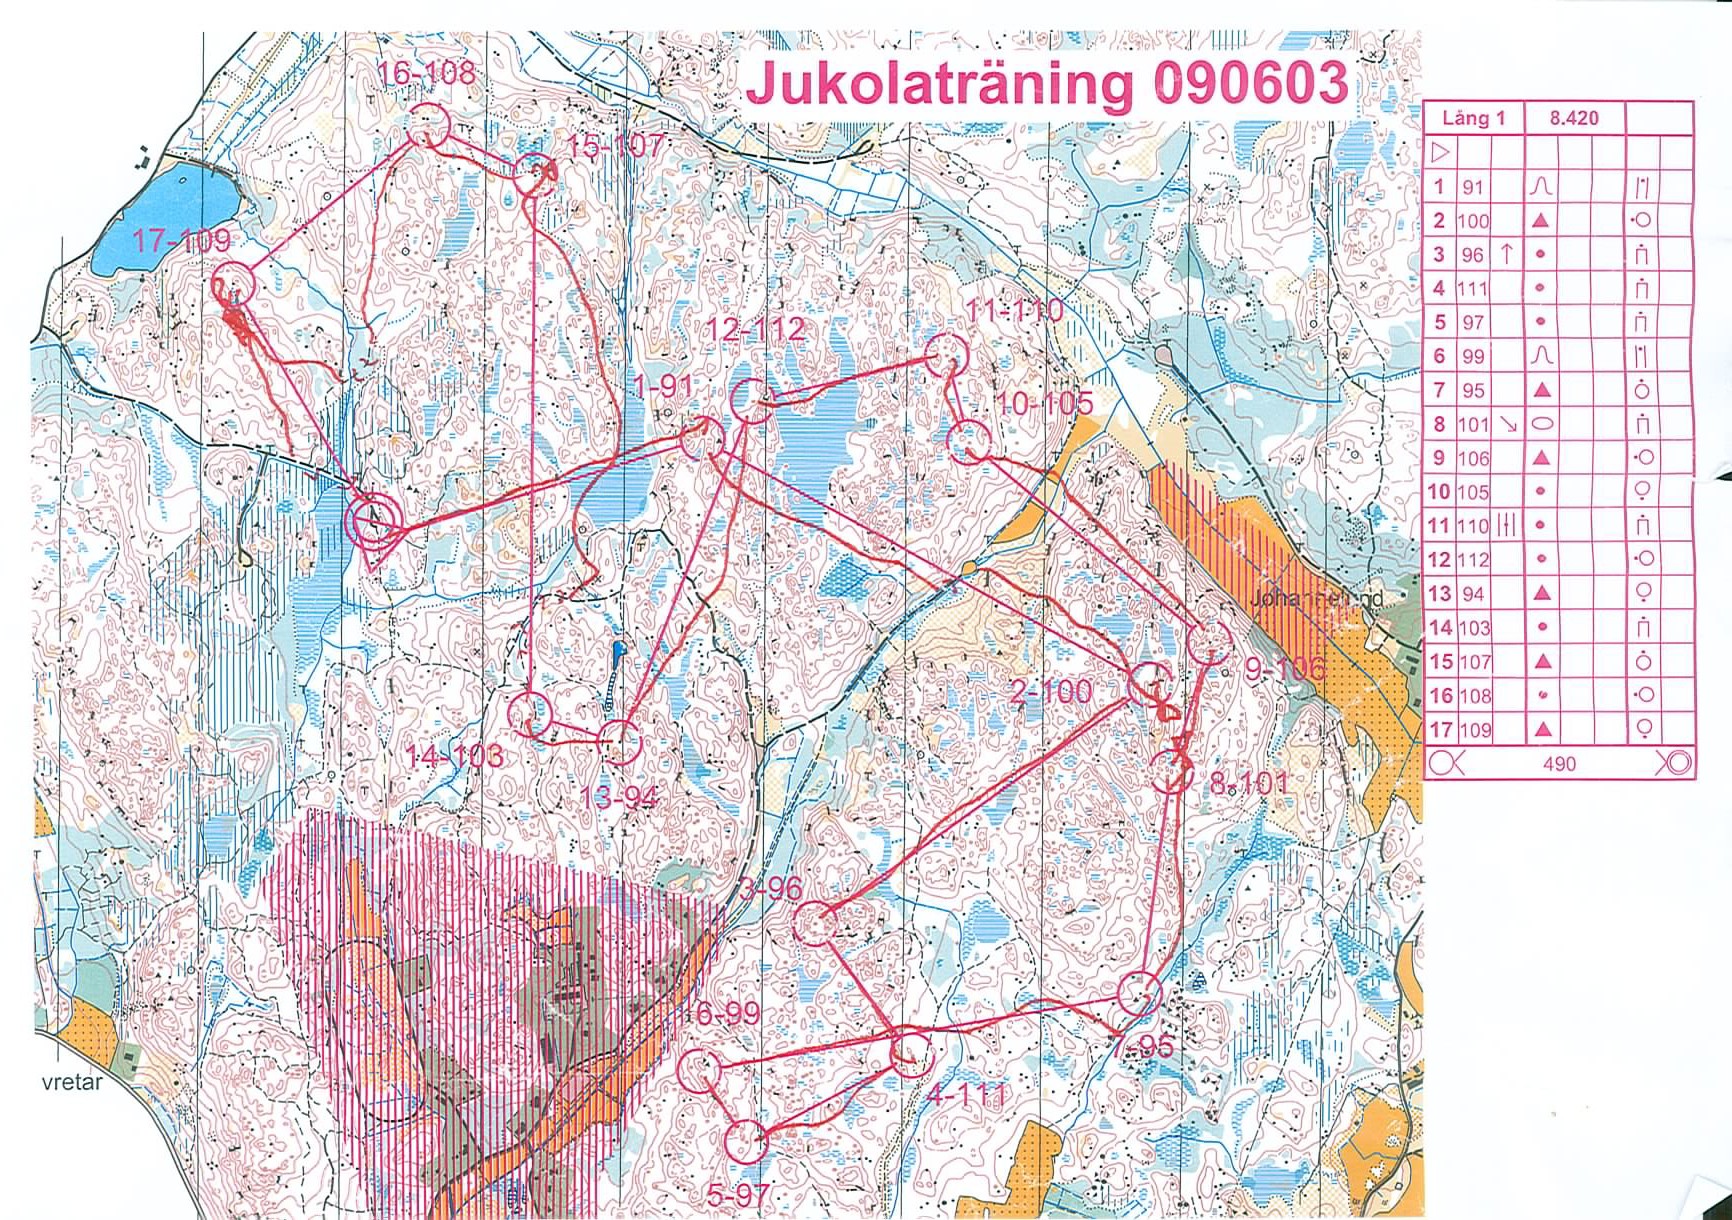 Jukola träning (03-06-2009)